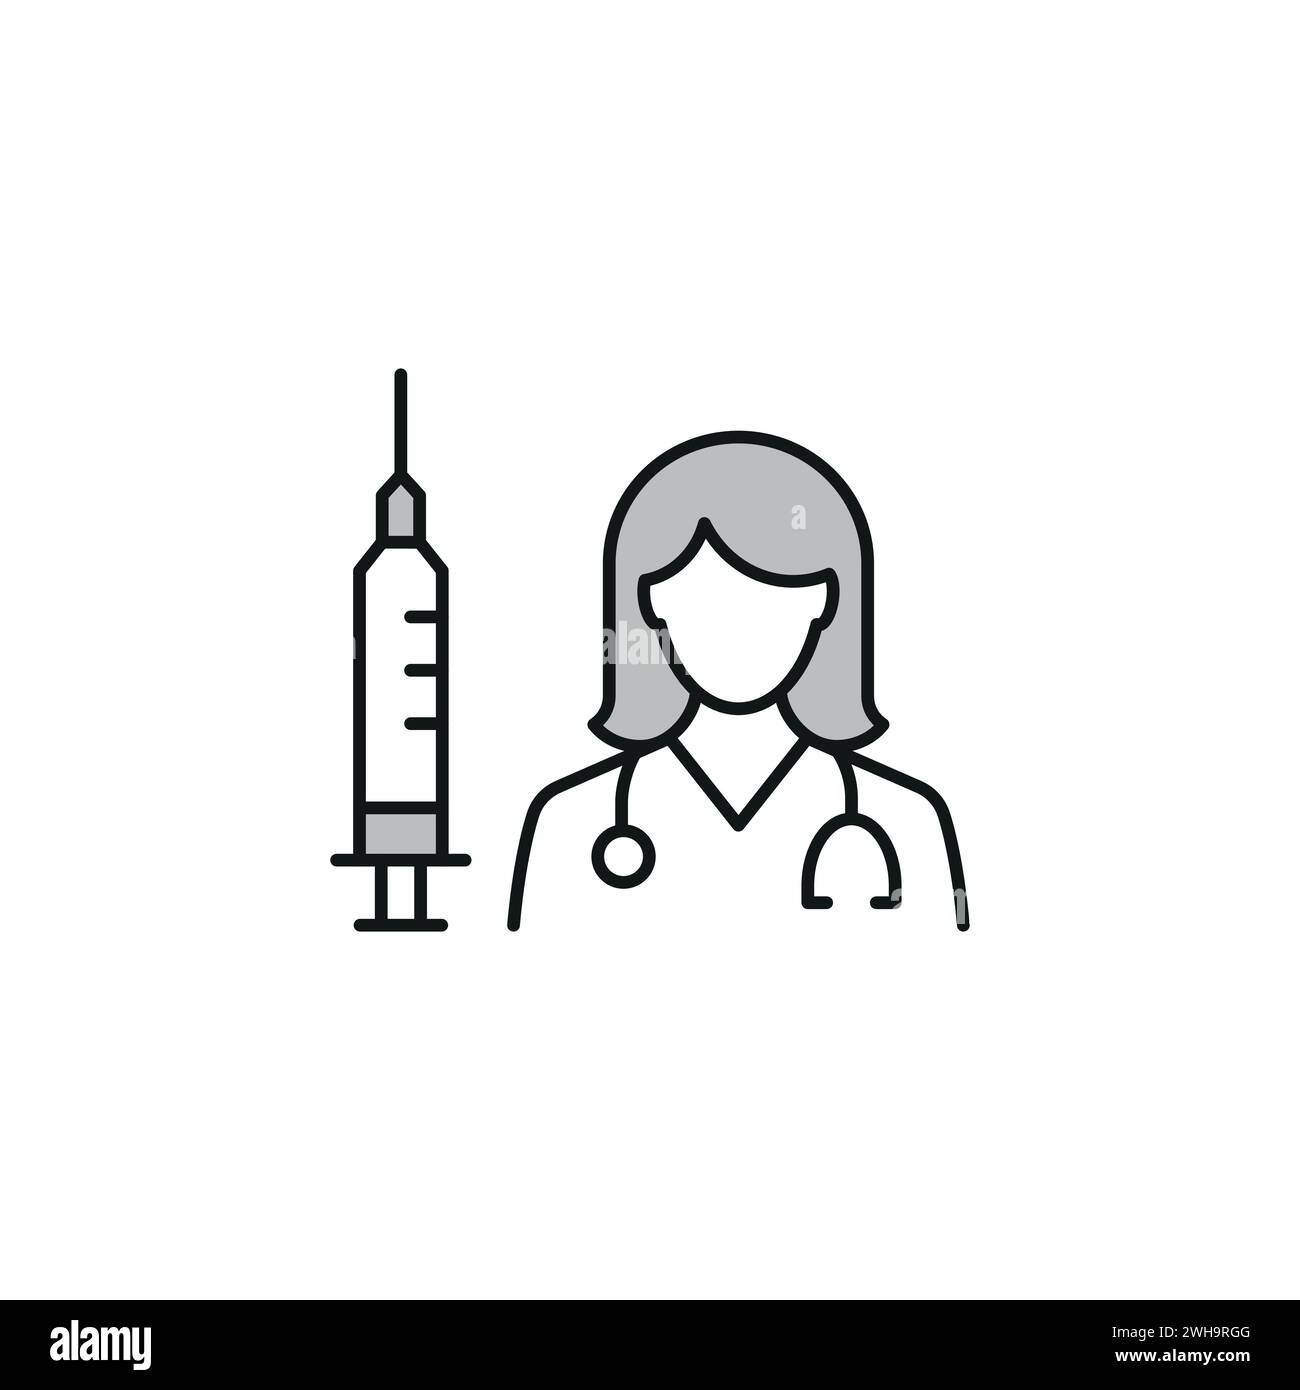 Medizinische Gesundheit Icons Objekte in Krankenhäusern und medizinischen Geschäften, Männer, Frauen, medizinische Ikonen verwendet Stock Vektor